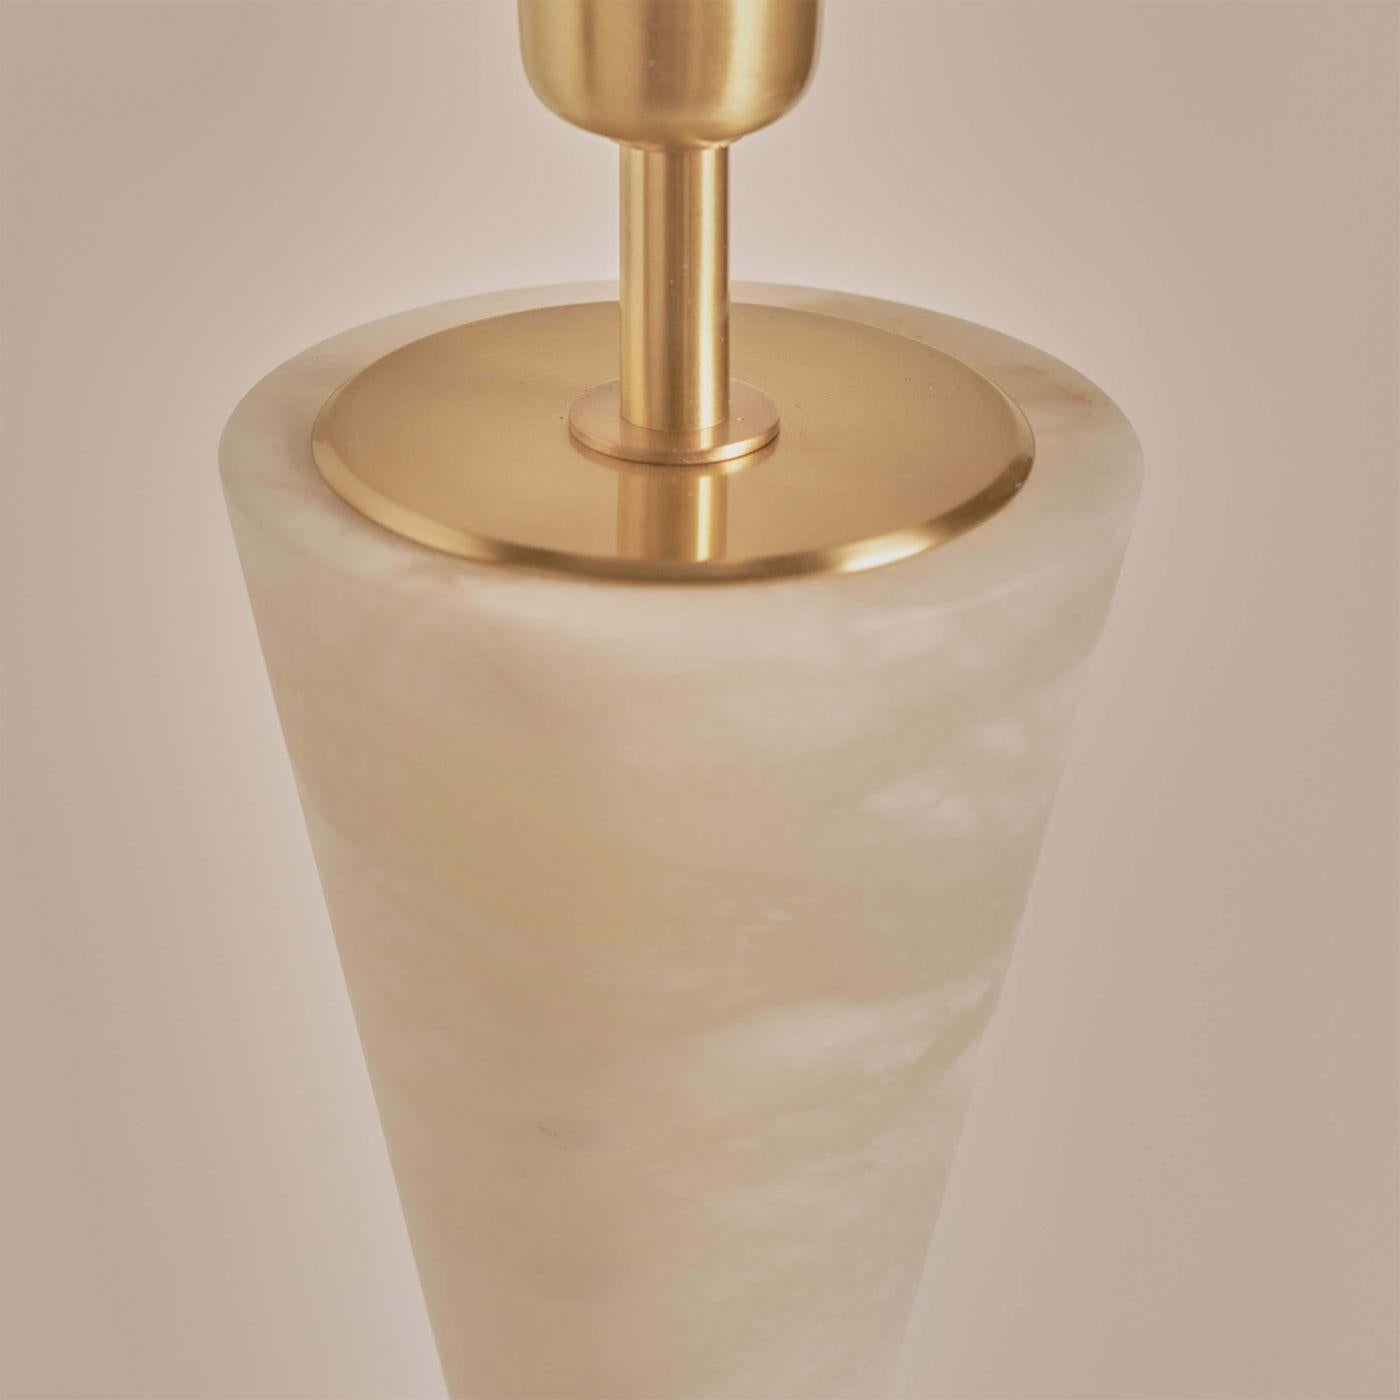 La lampe de table Silhouette est composée de deux cônes d'albâtre dont les sommets se rejoignent à travers une sphère décorative en laiton massif. Sa forme incurvée confère au luminaire un profil élégant et sophistiqué alliant la lourdeur de